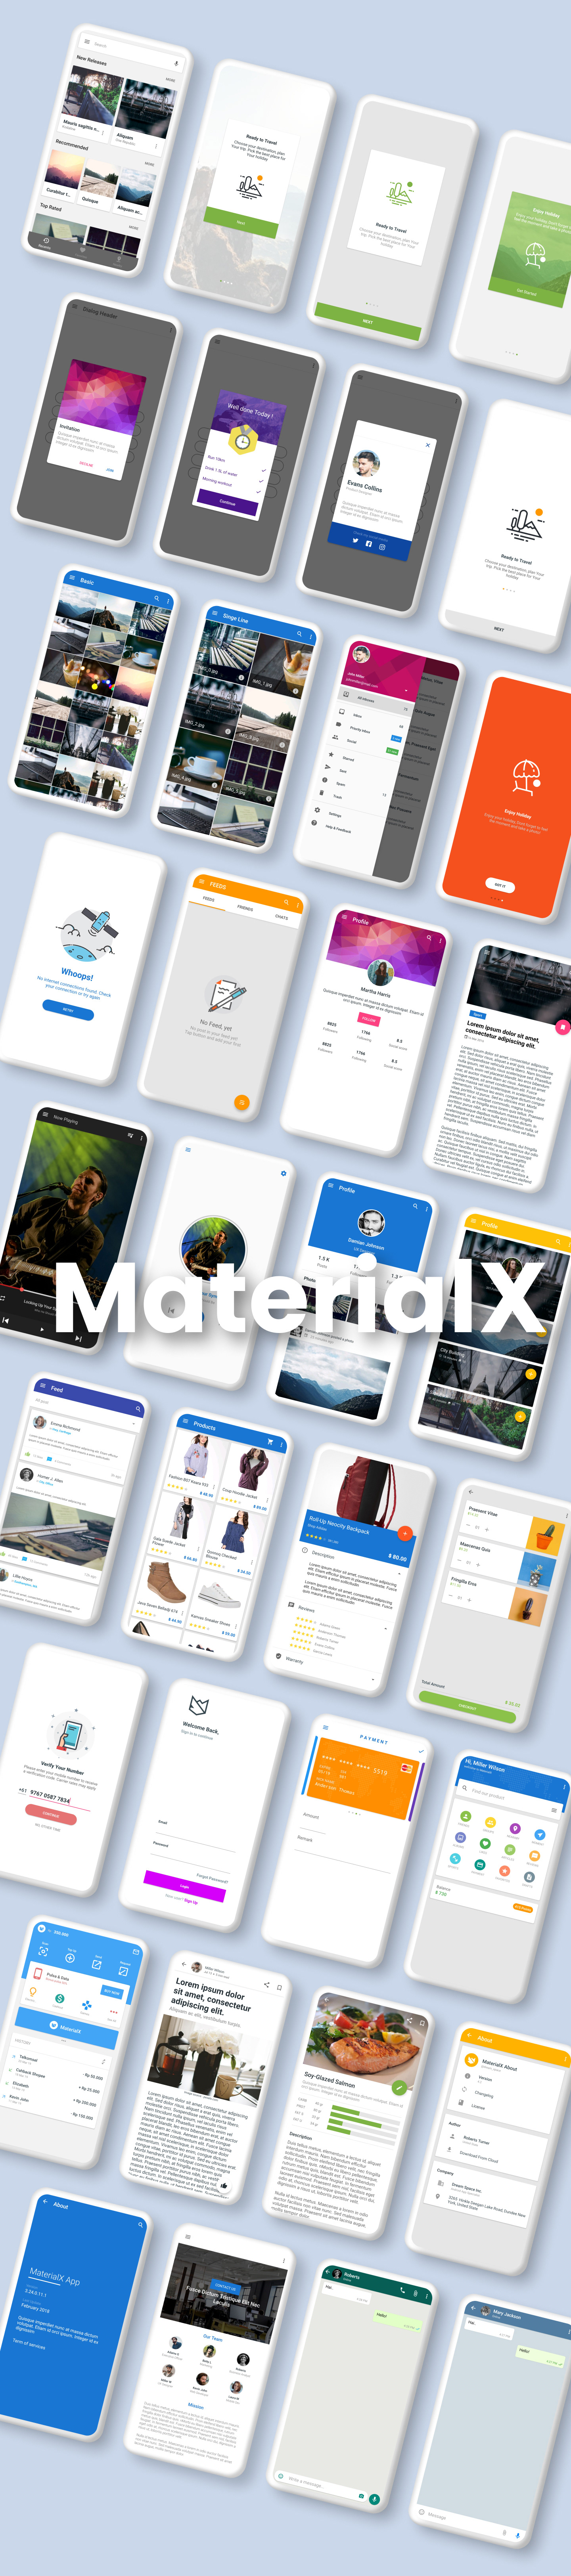 MaterialX - Android Material Design UI 2.8 - 5